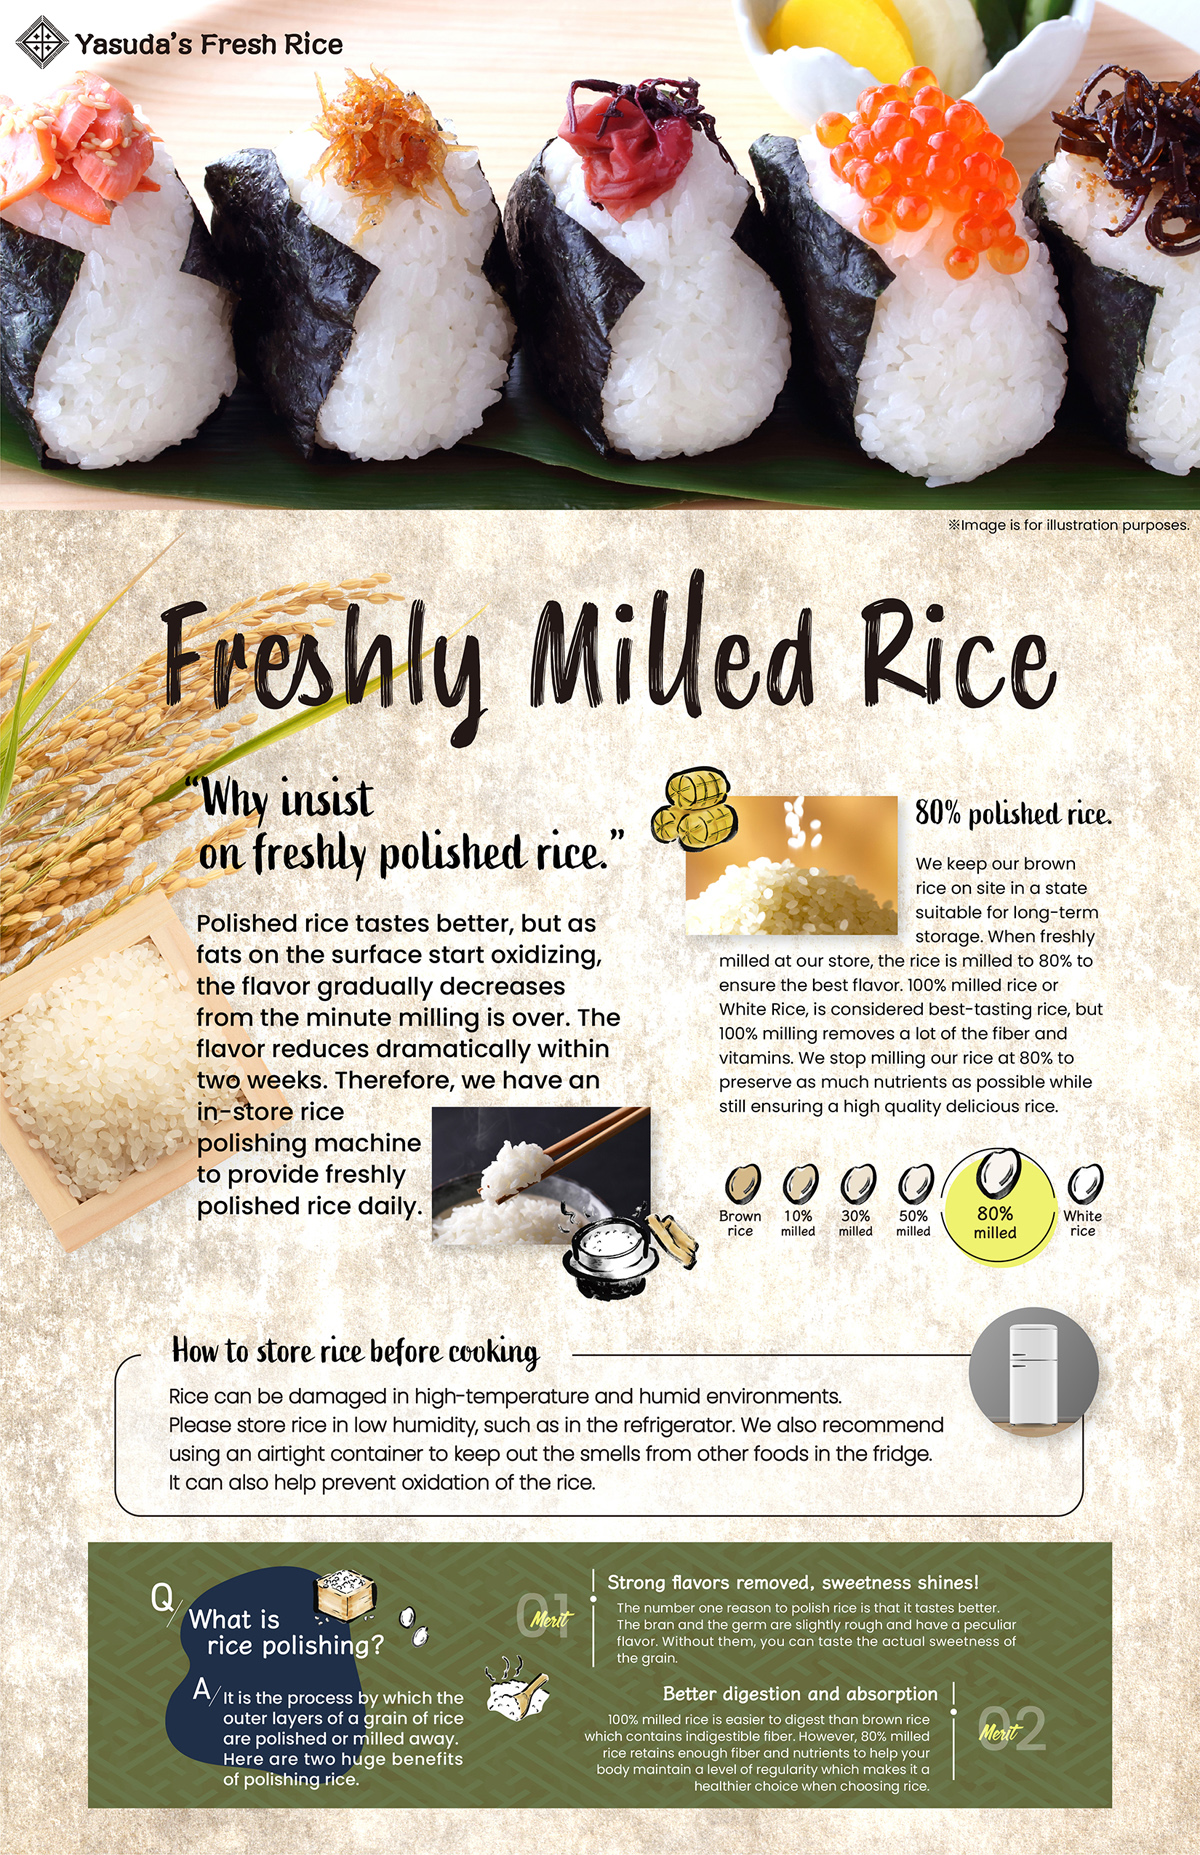 Yasuda's Fresh Rice